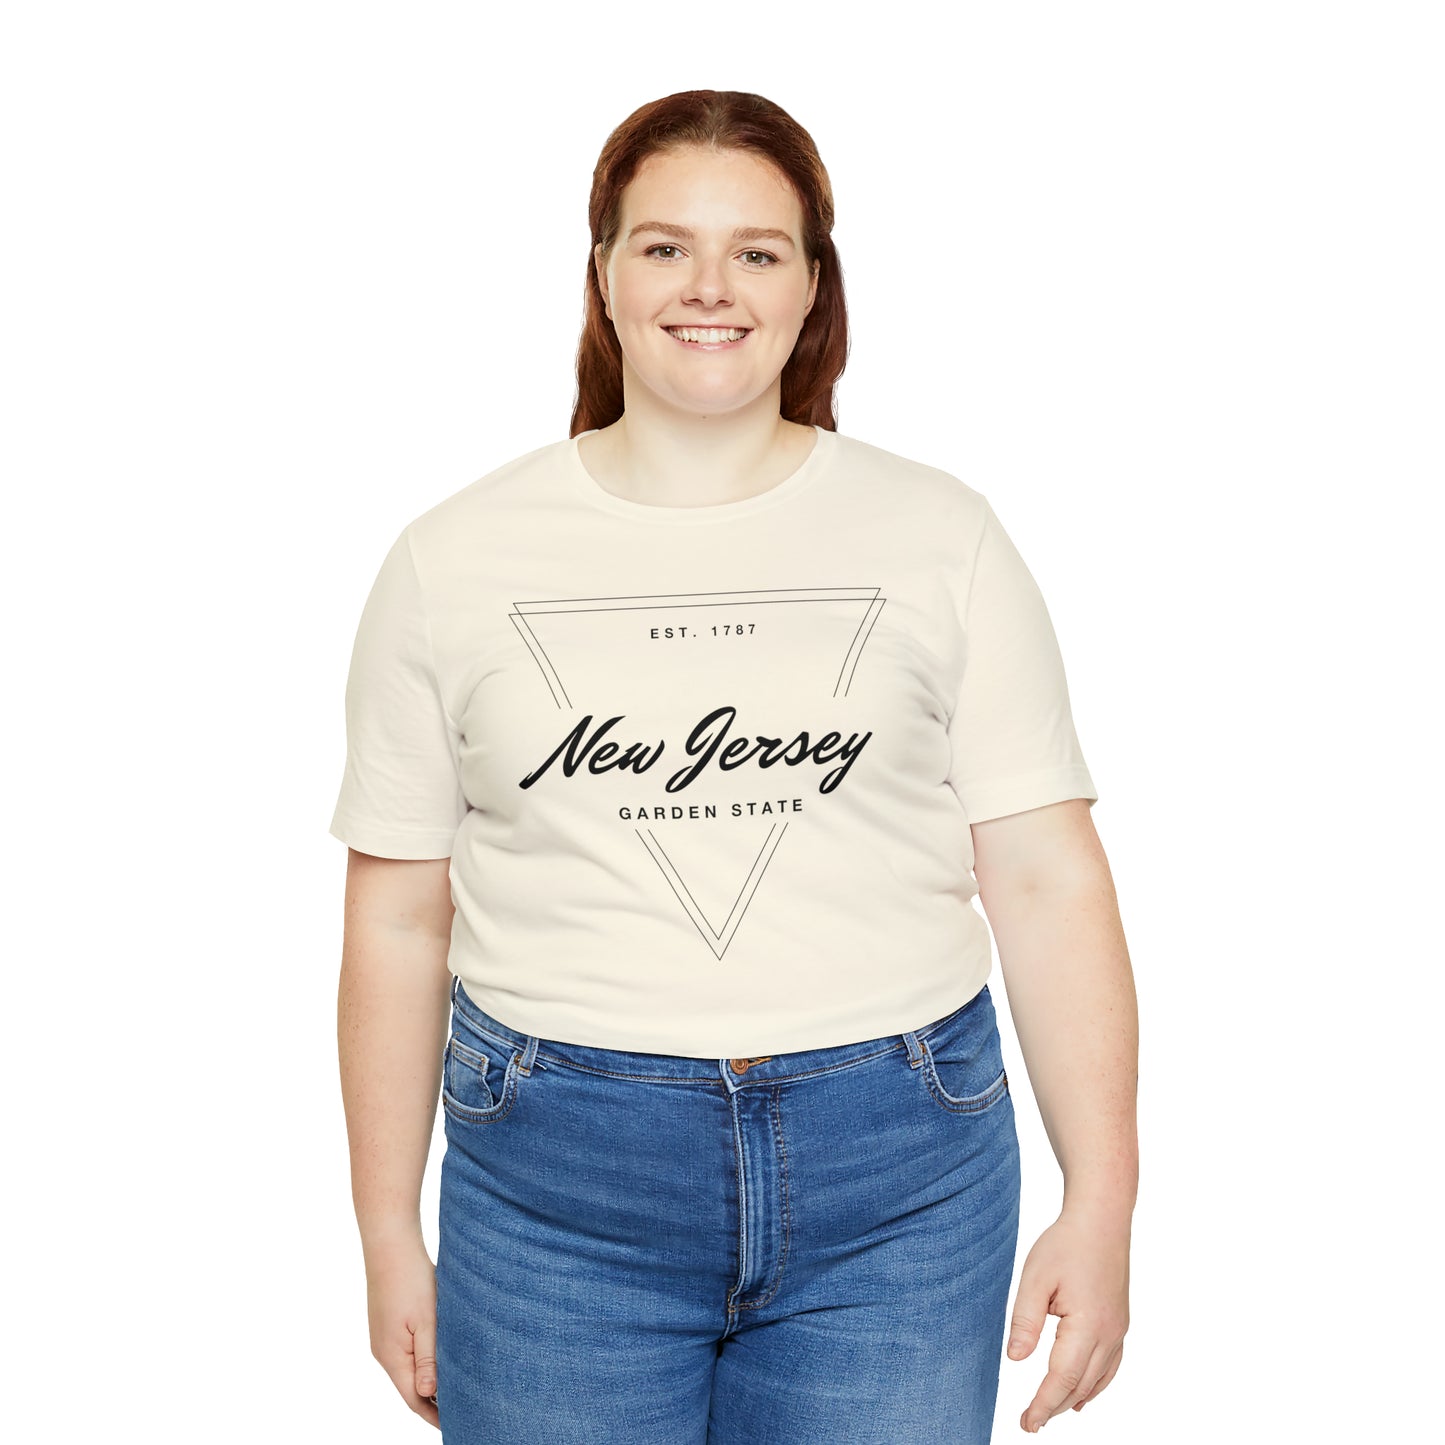 New Jersey Geometric Shirt